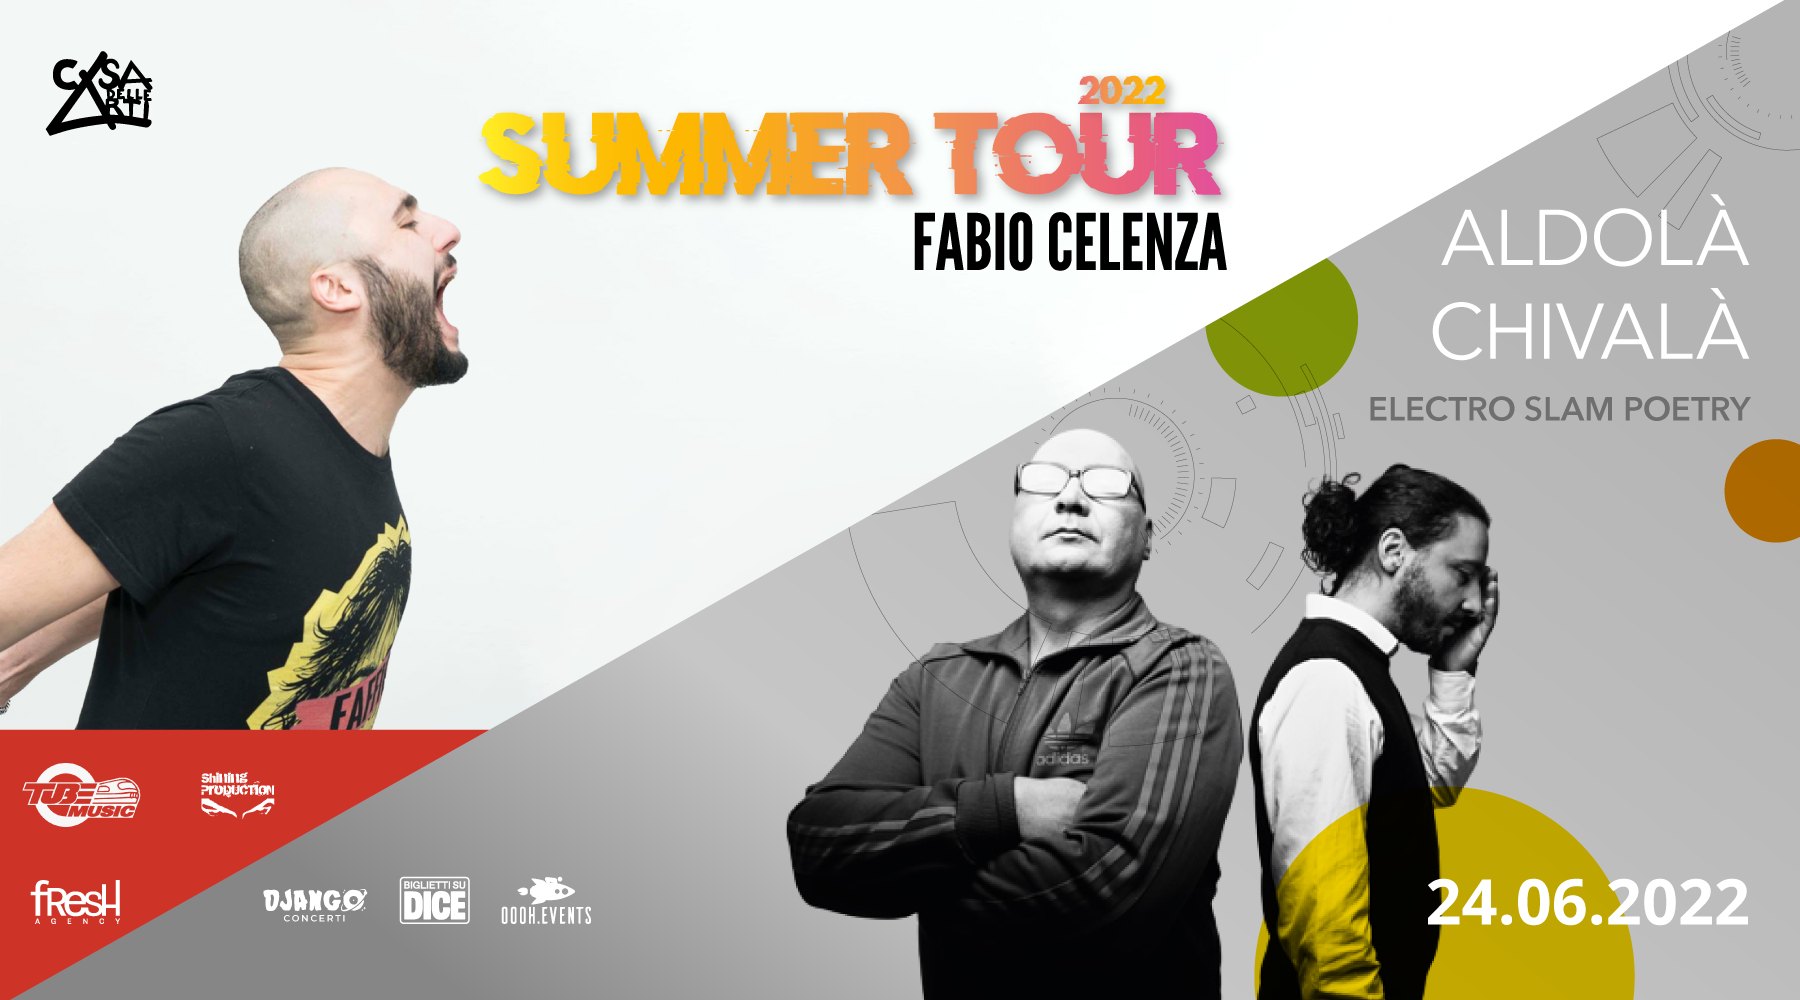 Fabio Celenza Summer Tour + Aldolà Chivalà // 24.06.22